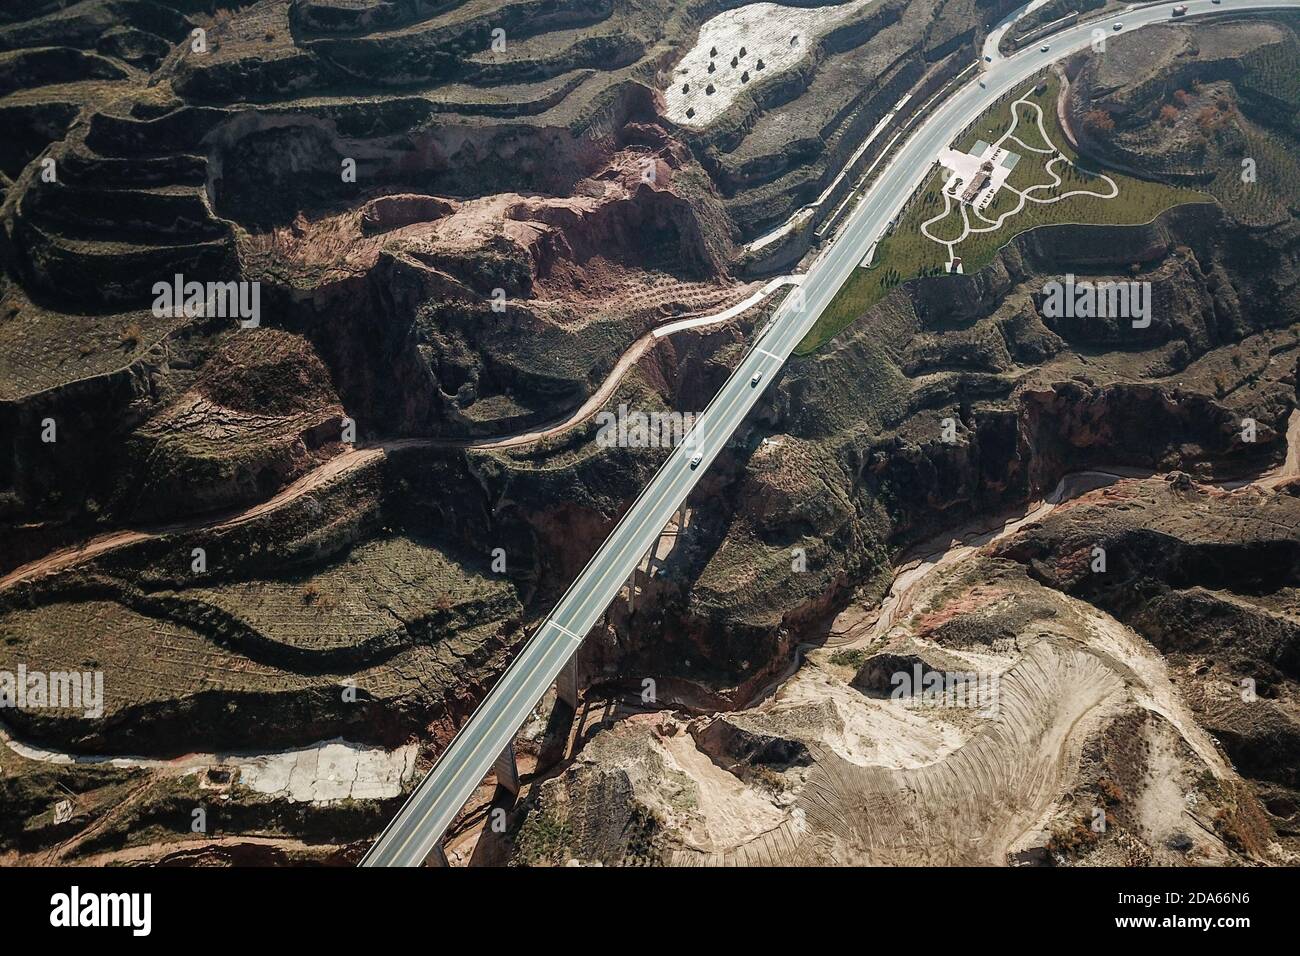 (201110) -- DONGXIANG, 10 de noviembre de 2020 (Xinhua) -- Foto aérea tomada el 9 de noviembre de 2020 muestra la vista de las carreteras de la aldea de Bulenggou en el condado autónomo de Dongxiang de la prefectura autónoma de Linxia Hui, al noroeste de la provincia de Gansu de China. La aldea de Bulenggou solía ser una zona muy empobrecida. Desde el comienzo del trabajo de alivio de la pobreza, la aldea ha cambiado junto con una mejor infraestructura, lo que permite a los pobladores acceder al agua potable, a las carreteras, a los centros de salud y a la escuela primaria bien equipada. La cría de ganado se ha convertido en la industria líder de la aldea de Bulenggou, donde los aldeanos fueron testigos Foto de stock